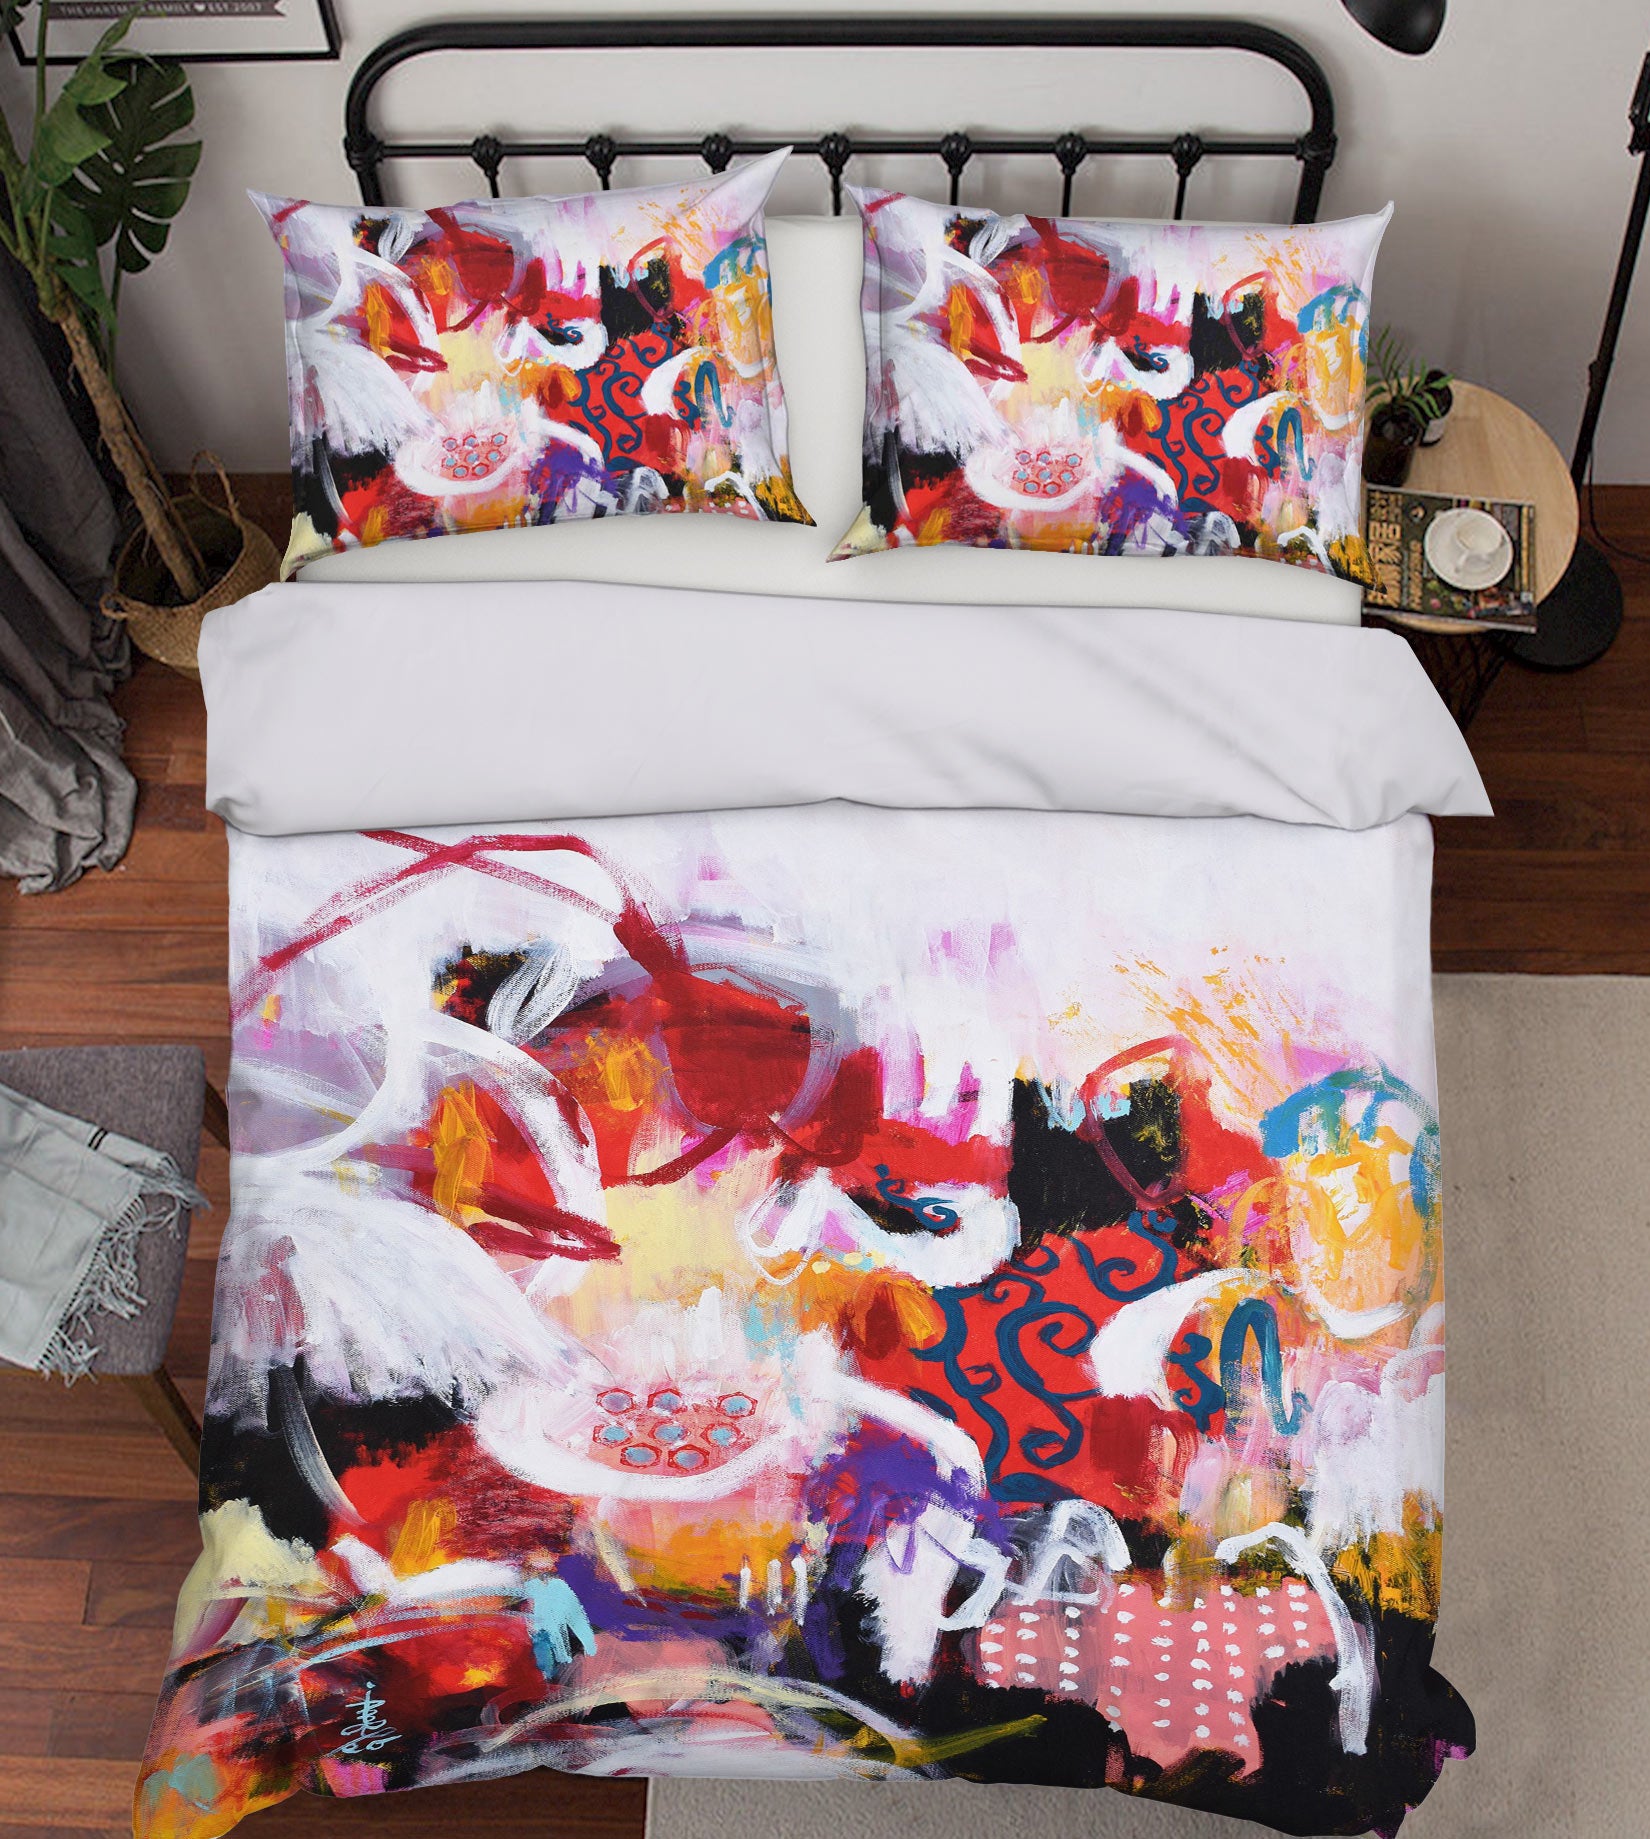 3D Paint Graffiti 1138 Misako Chida Bedding Bed Pillowcases Quilt Cover Duvet Cover